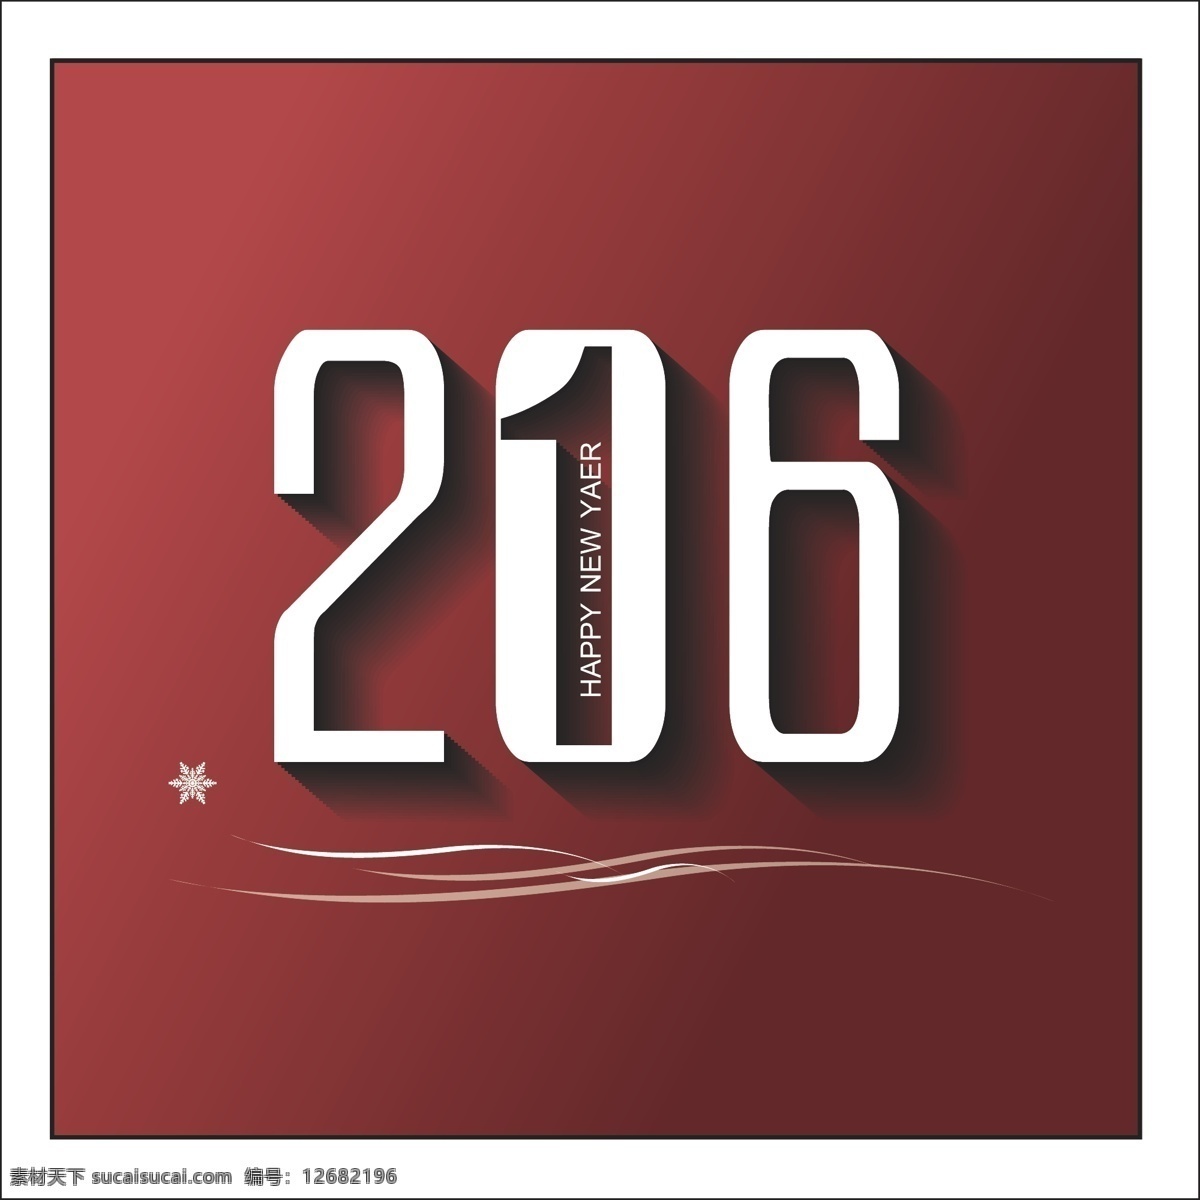 创意 2016 新年 字体 矢量 矢量背景 节日庆祝素材 矢量元素 彩色背景 喜庆背景 节日矢量元素 矢量设计模板